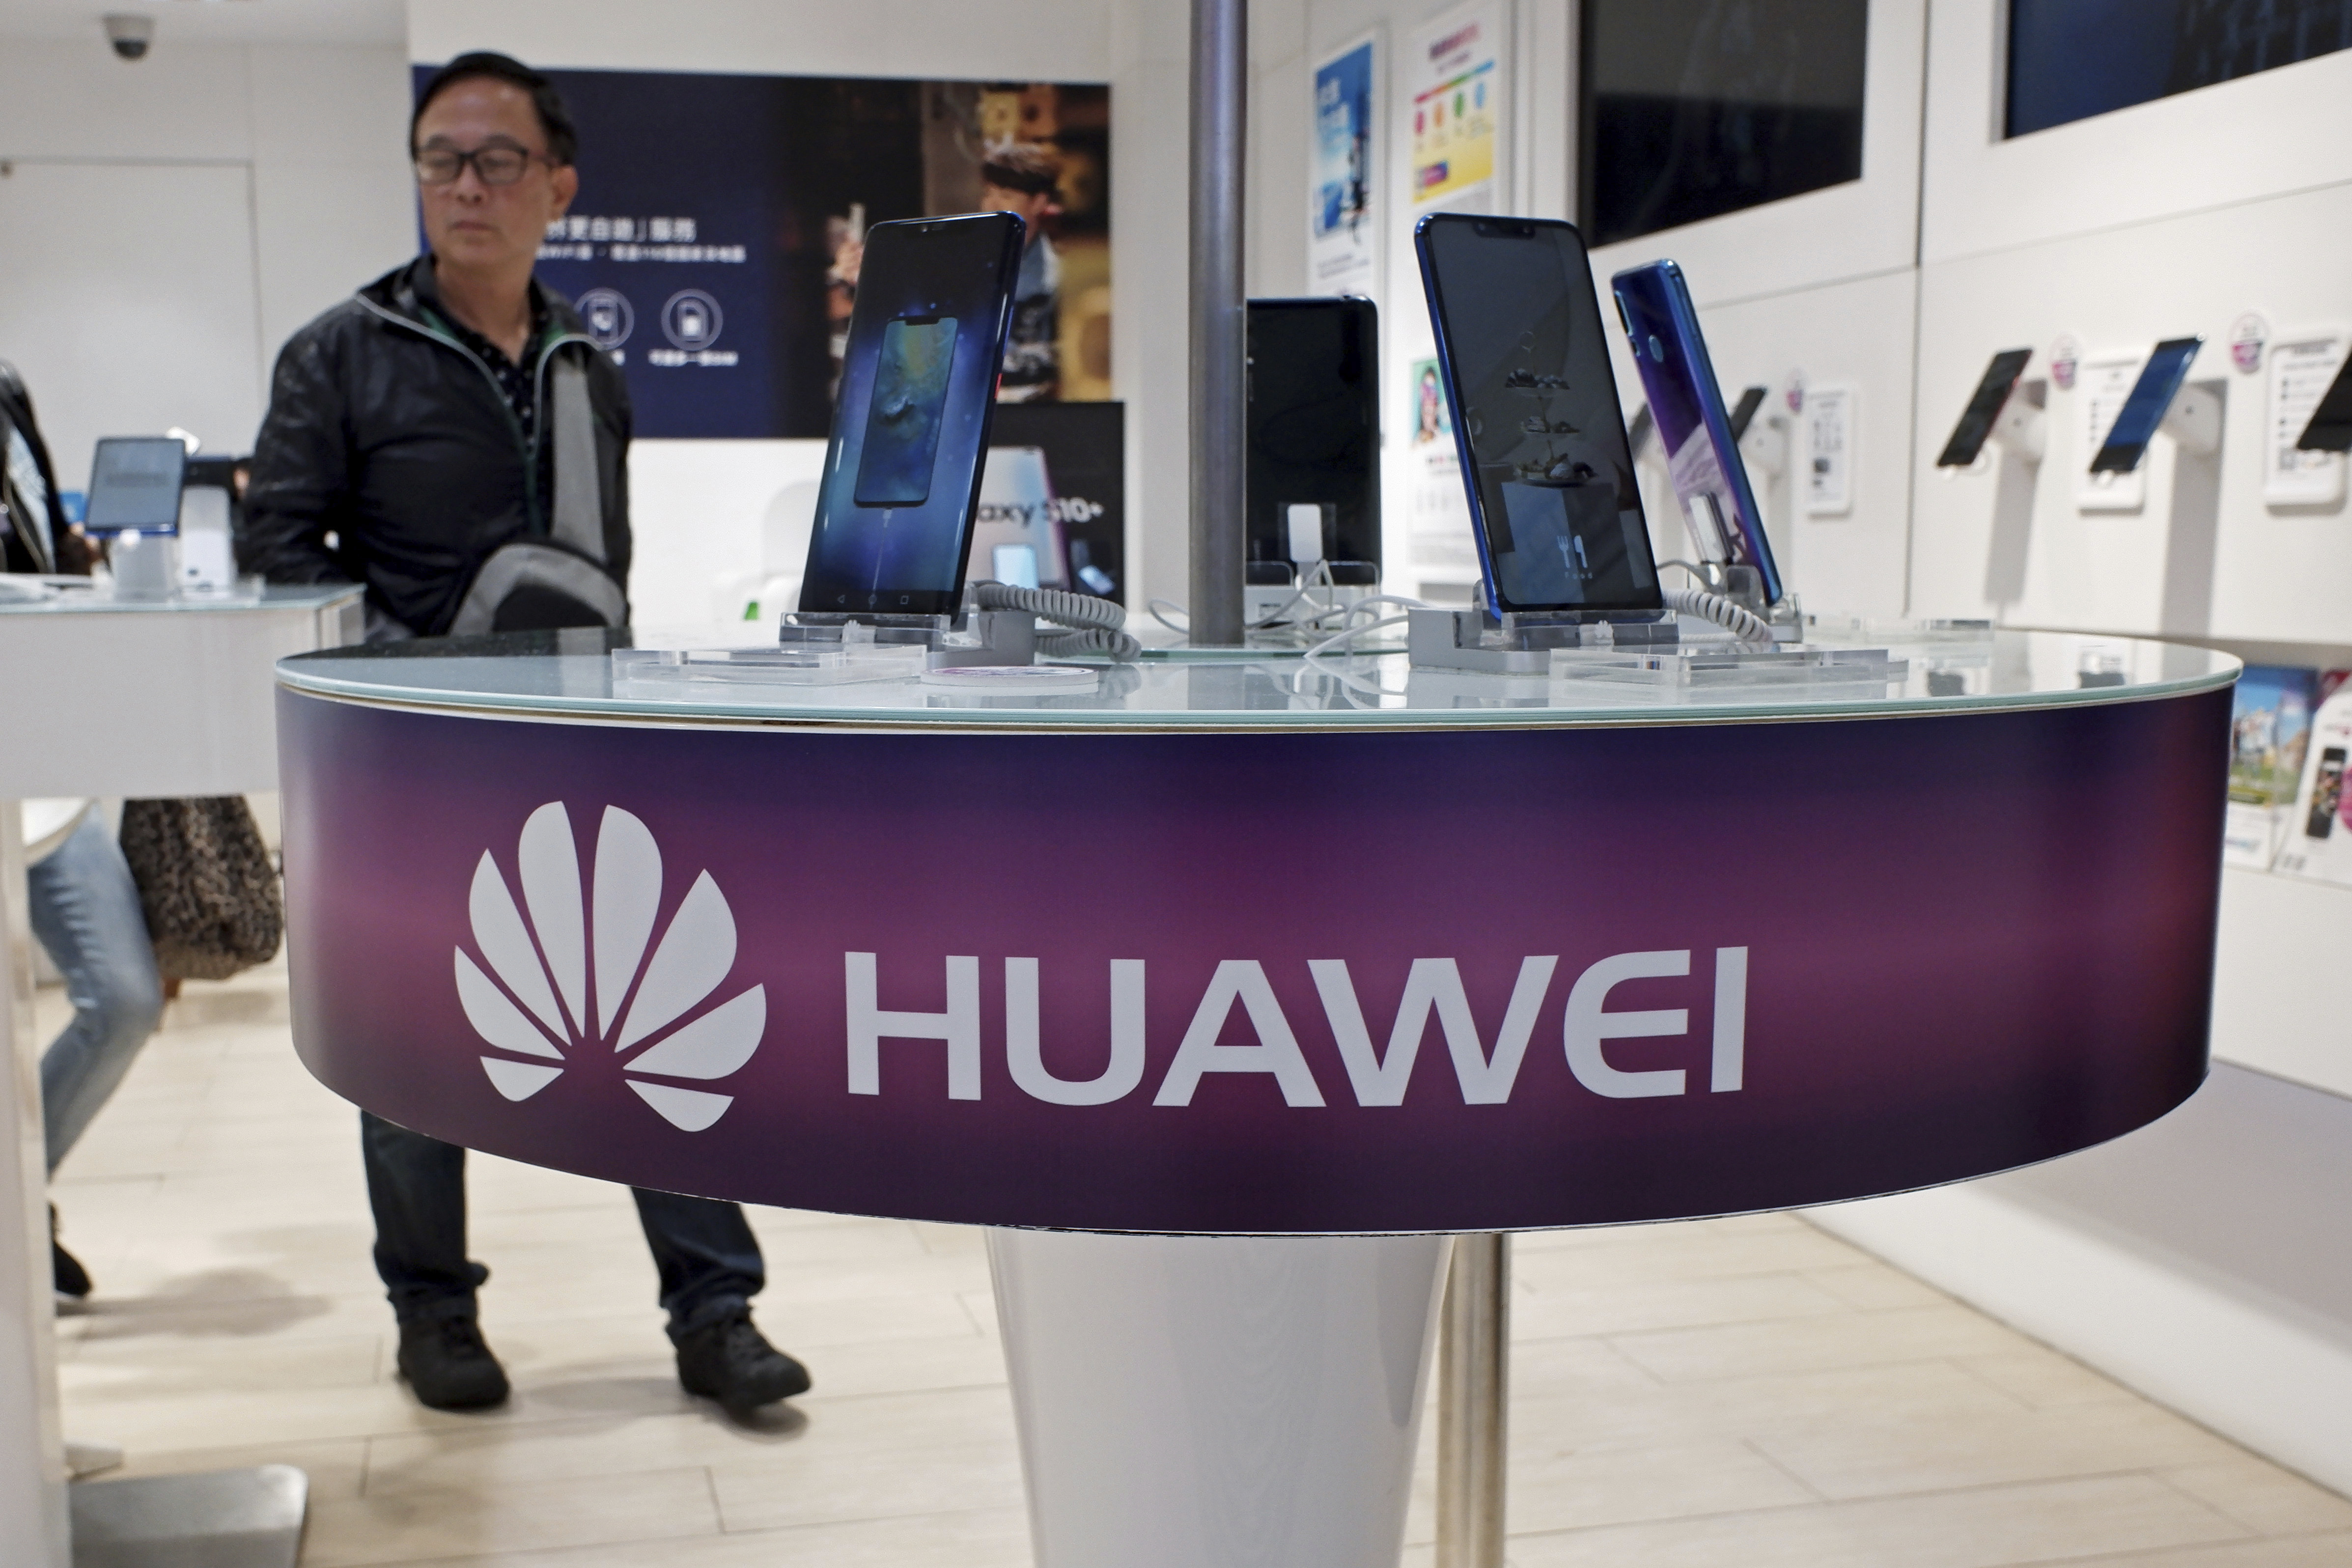 lidar radar jammer plane - China’s Huawei Says 1Q Sales Up 39%